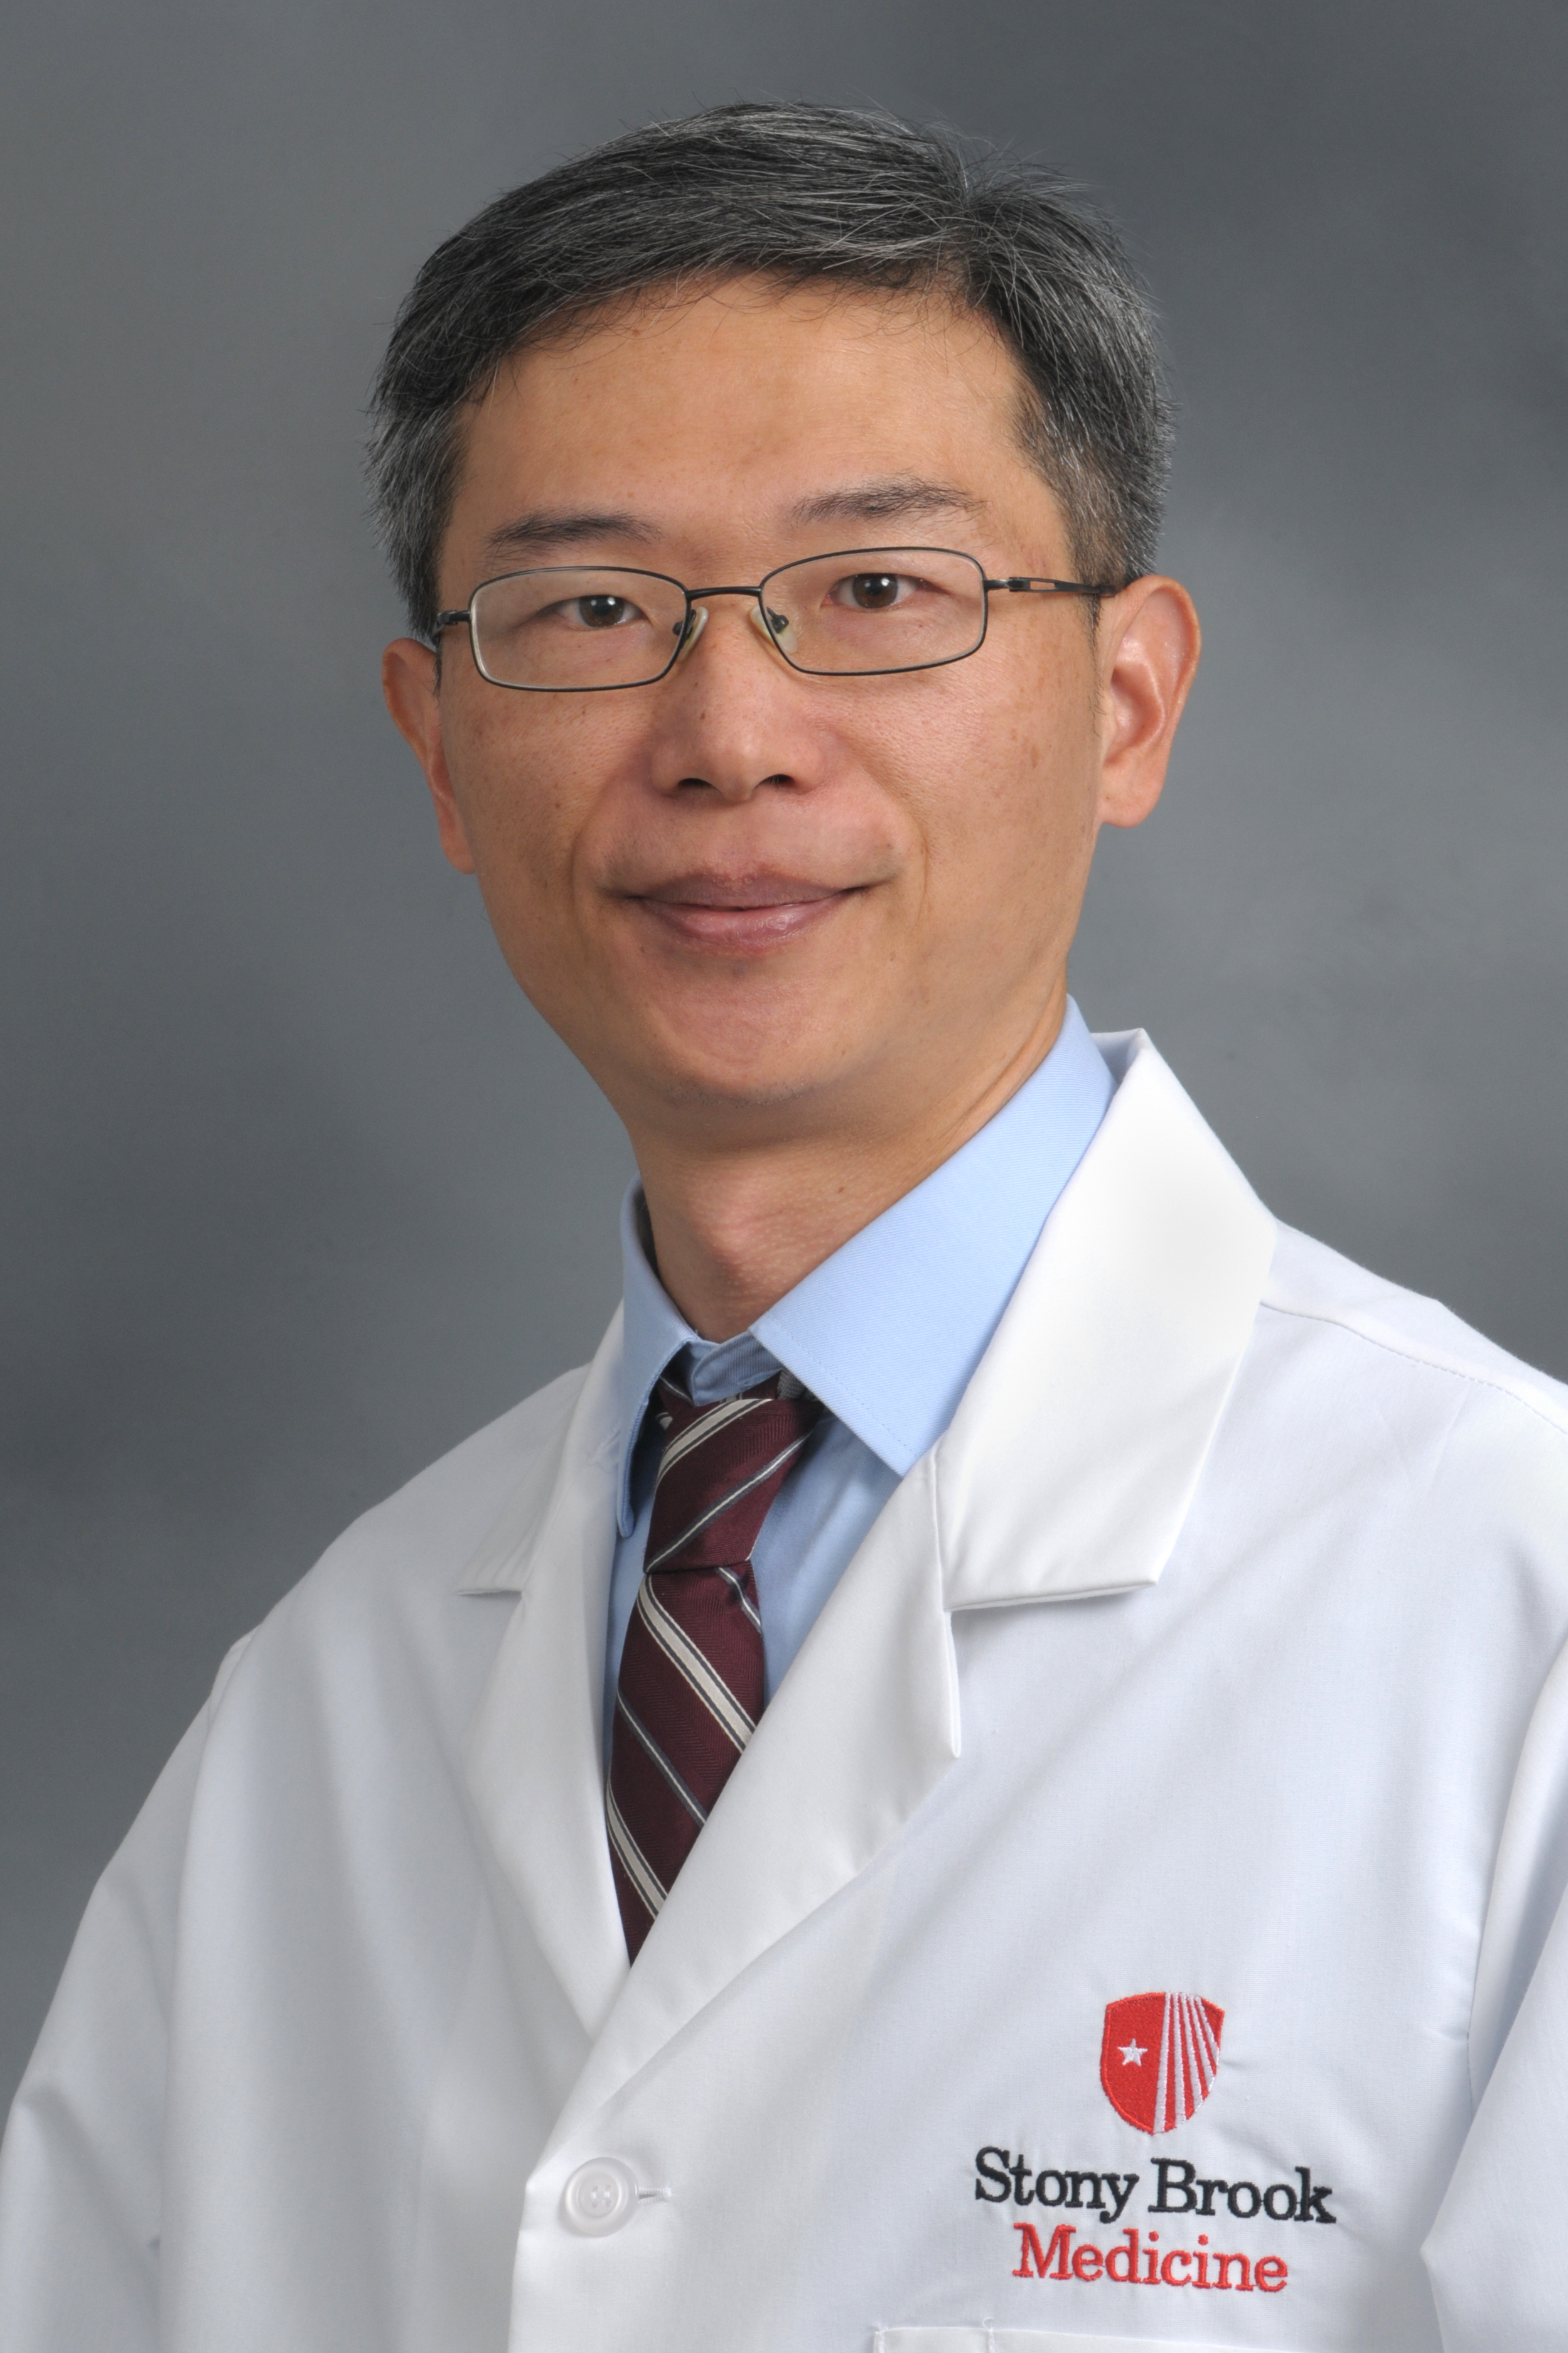 Wei Yang, PhD